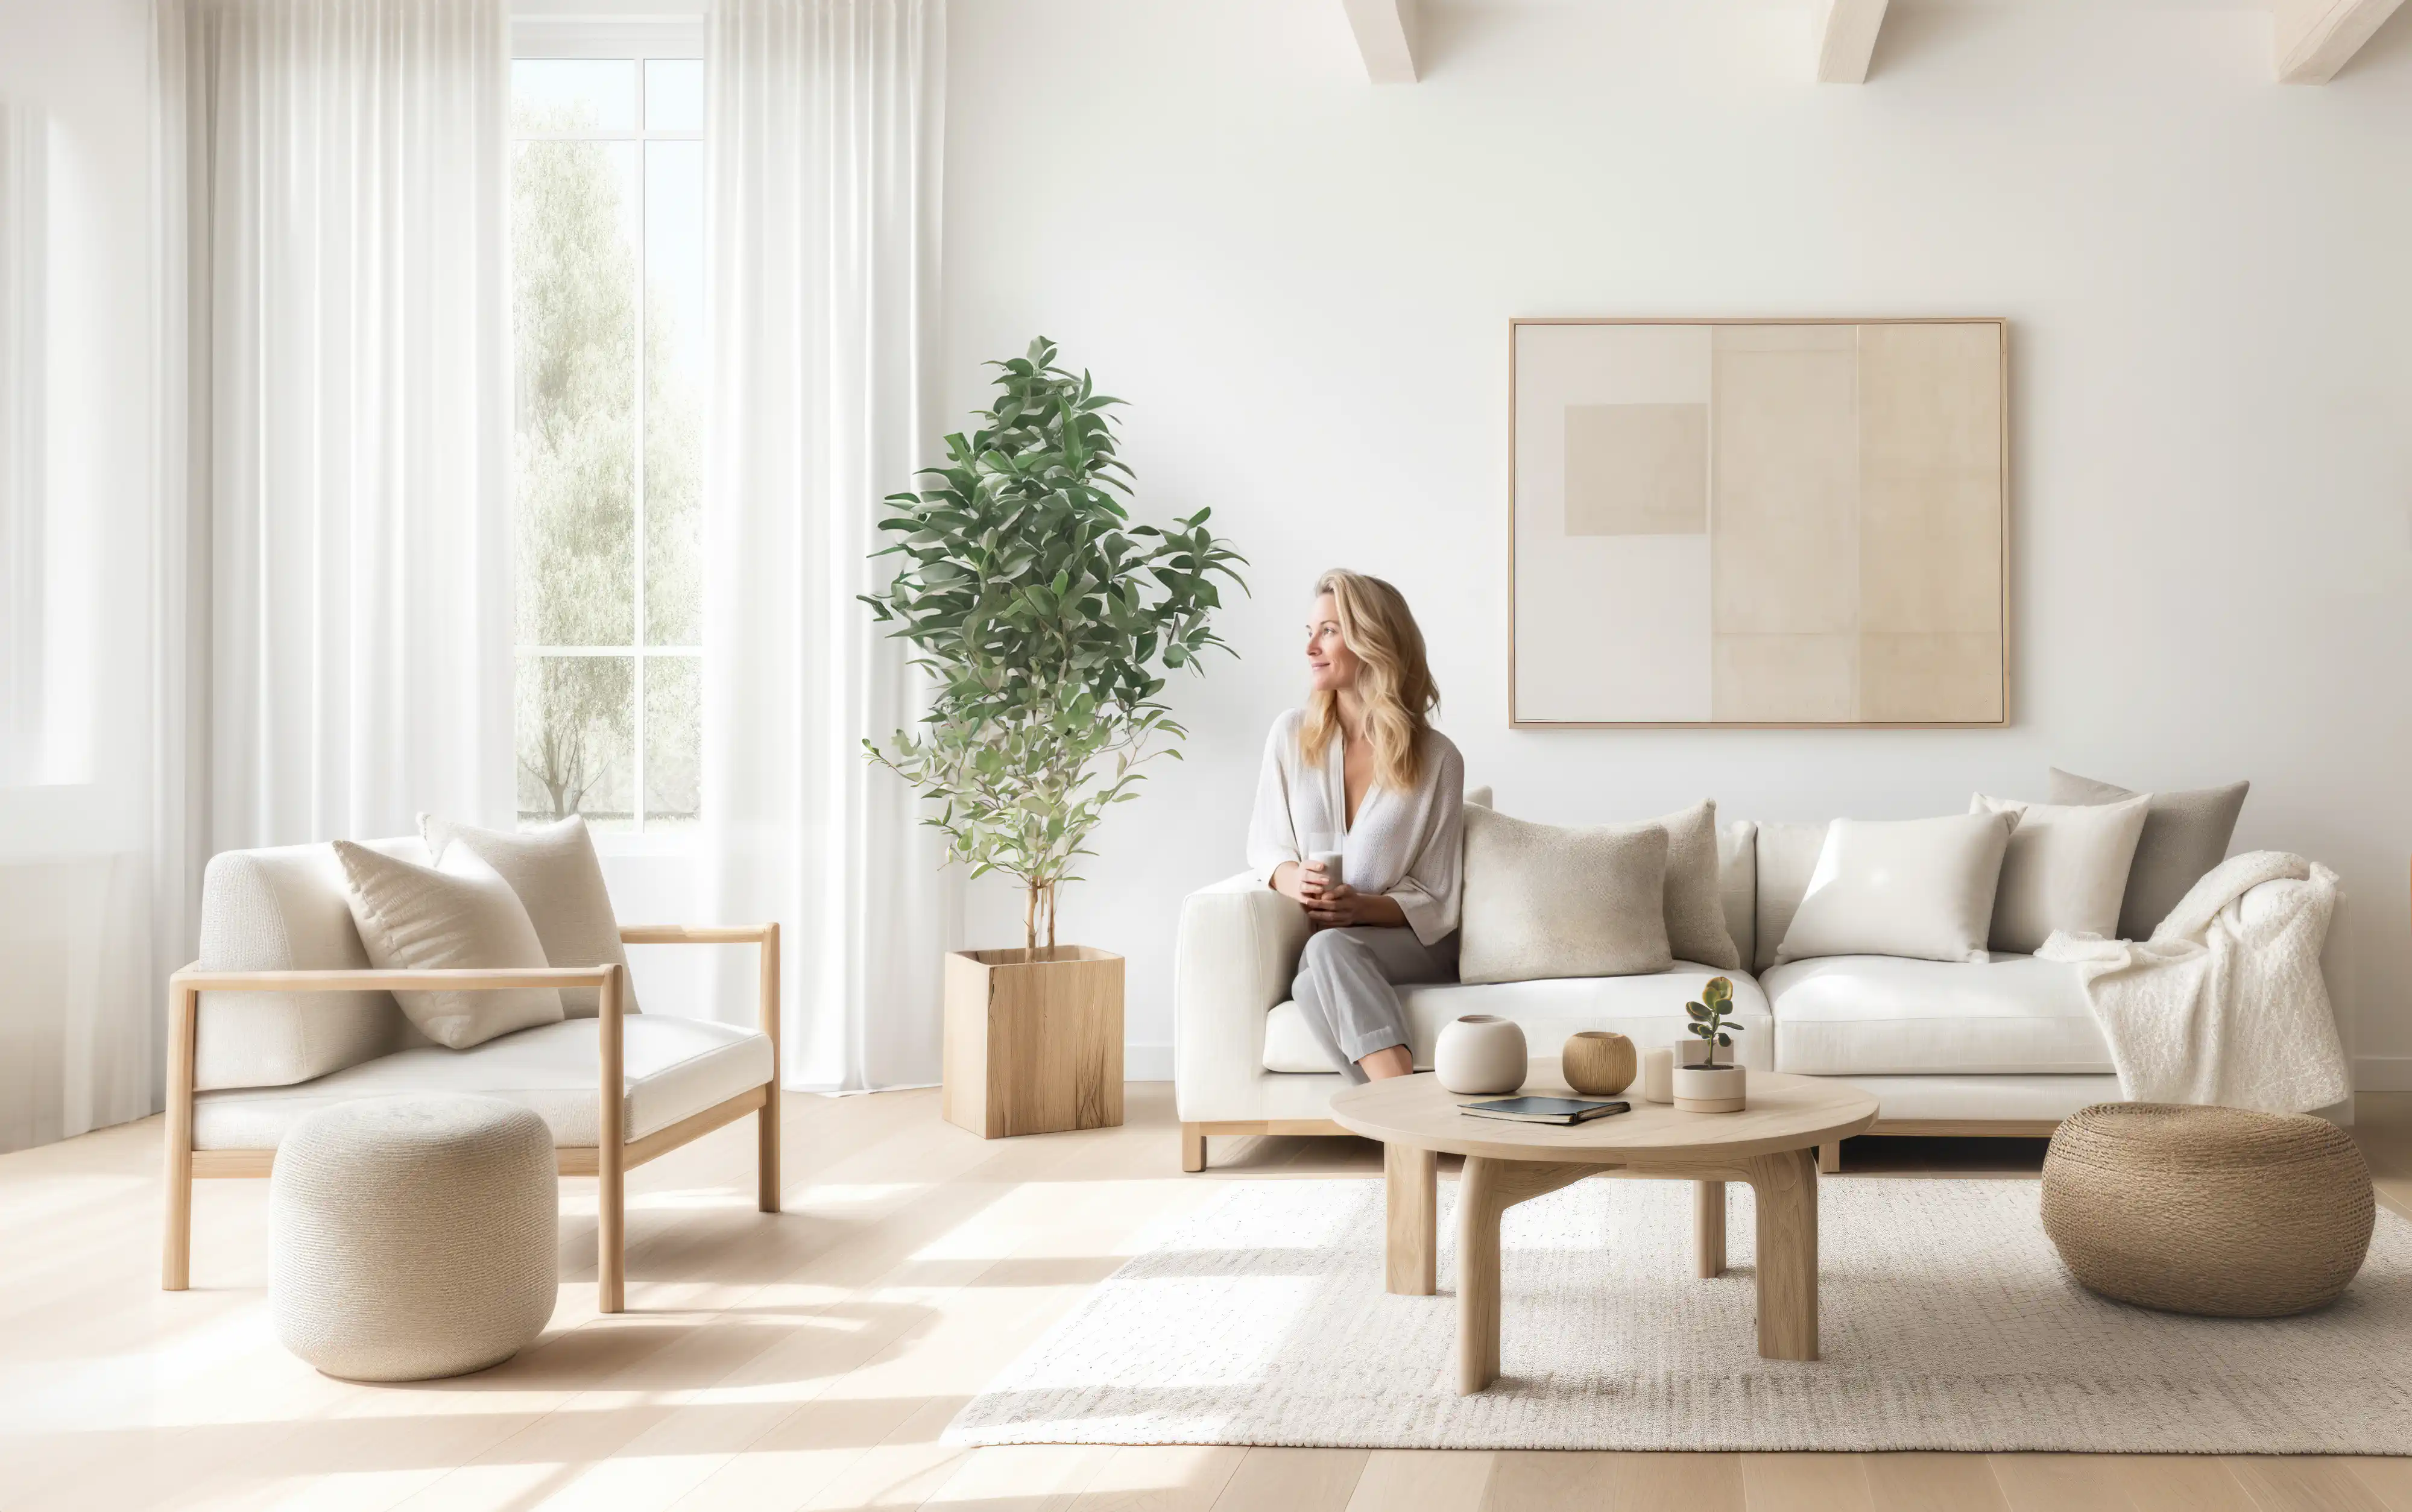 Une femme en blanc assise sur un canapé dans un salon moderne avec une fenêtre et une plante, intérieur signé Sarah Brown Design